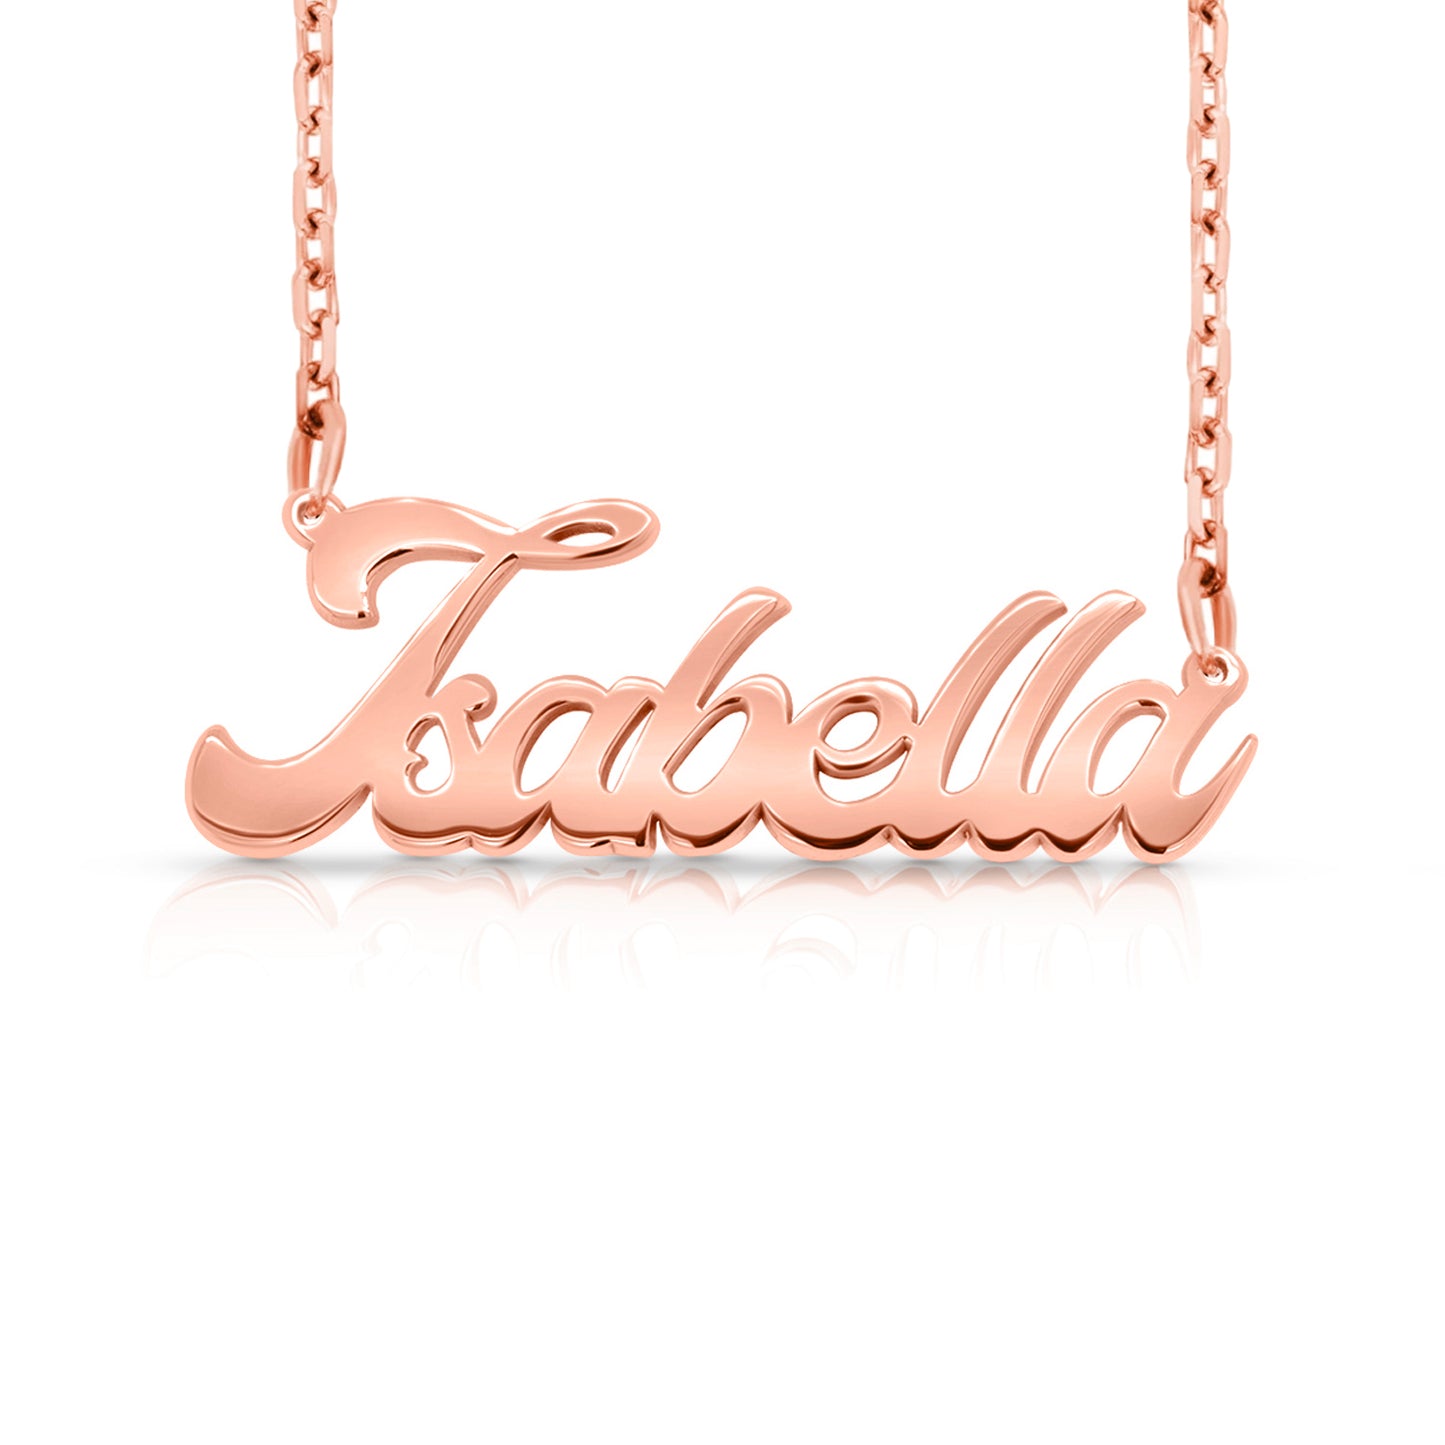 14 Karat "Isabella" Style Nameplate